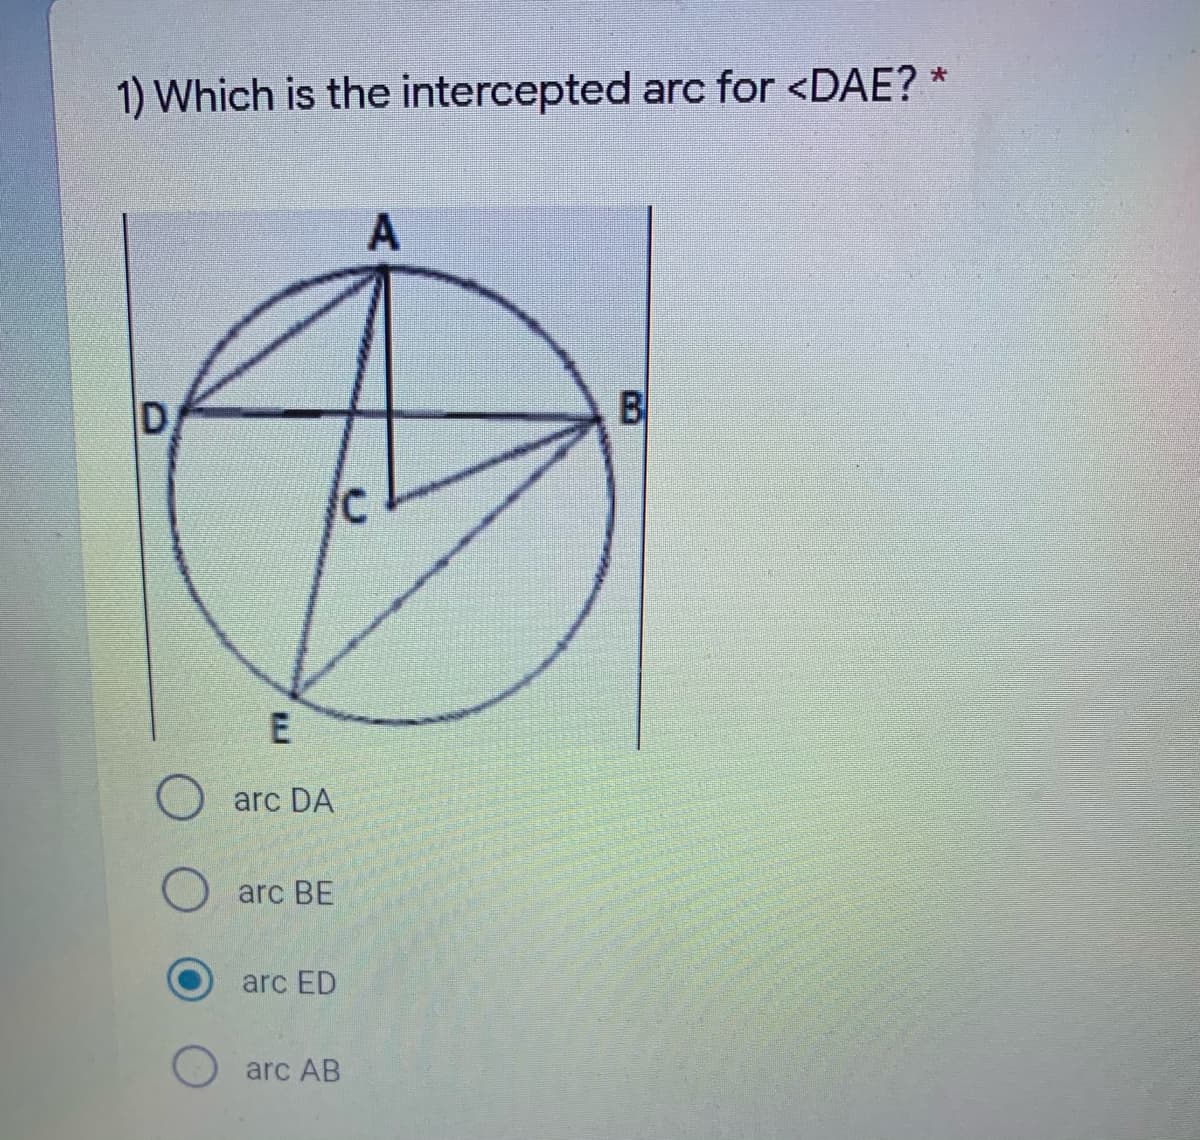 1) Which is the intercepted arc for <DAE?
A
D
B
E
arc DA
arc BE
arc ED
arc AB
